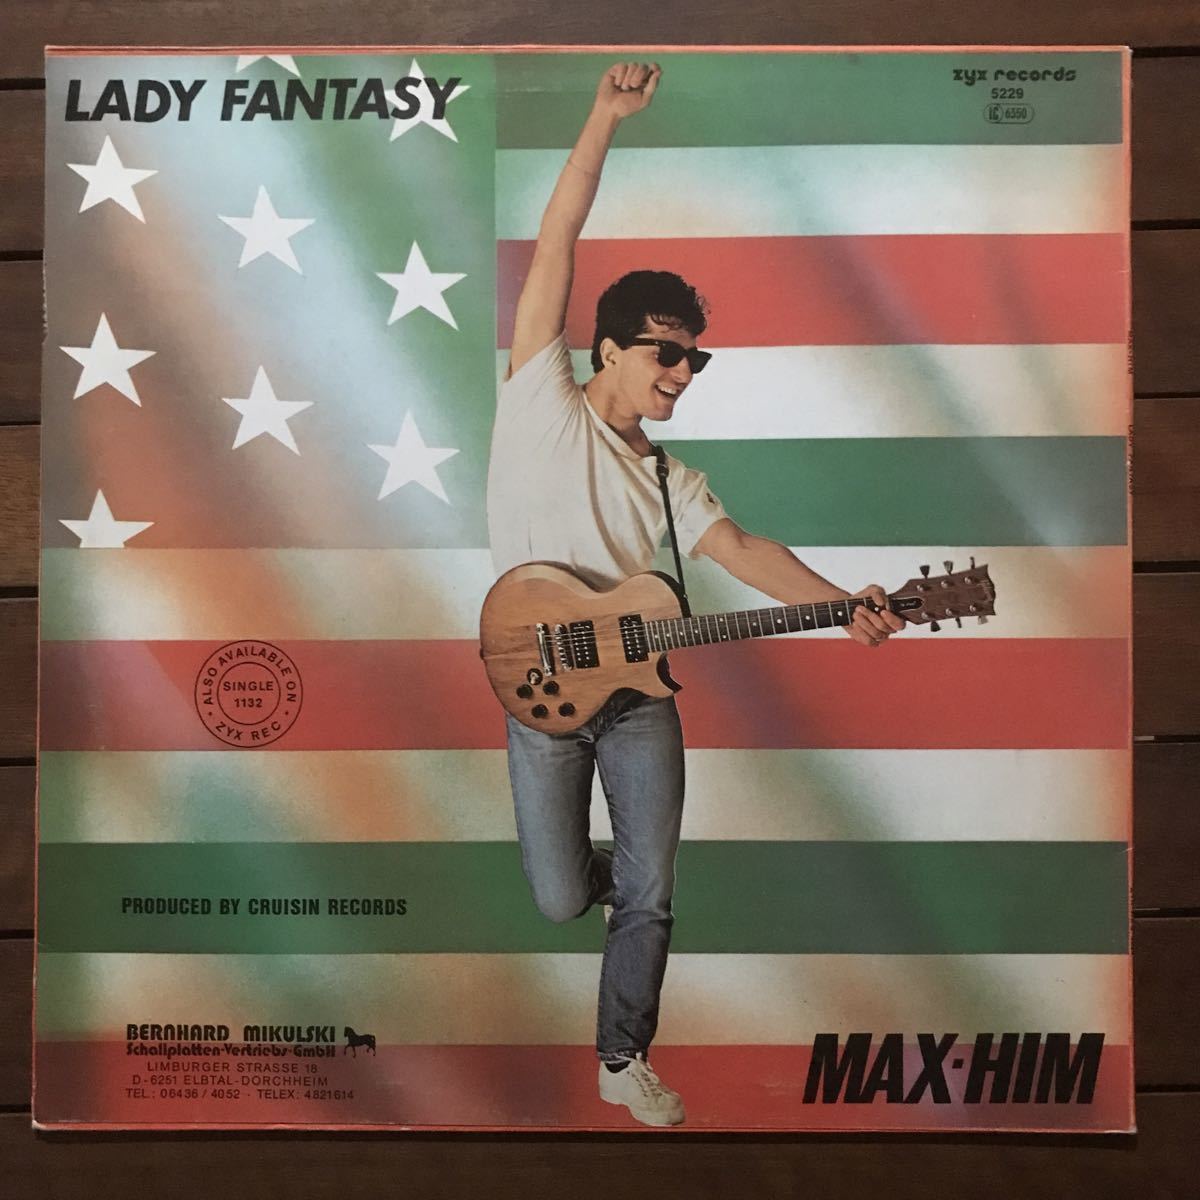 ●【r&b】Max-Him / Lady Fantasy［12inch］オリジナル盤《3-1-53 9595》